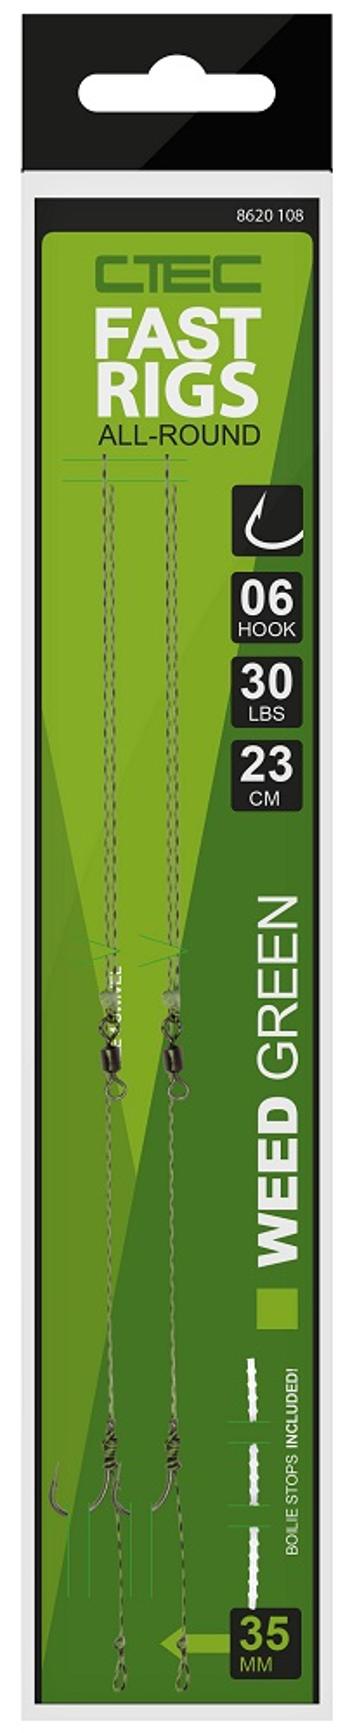 Spro návazec c tec fast rigs weedy zelená 23 cm 30 lb 2 ks-velikost háčku 6